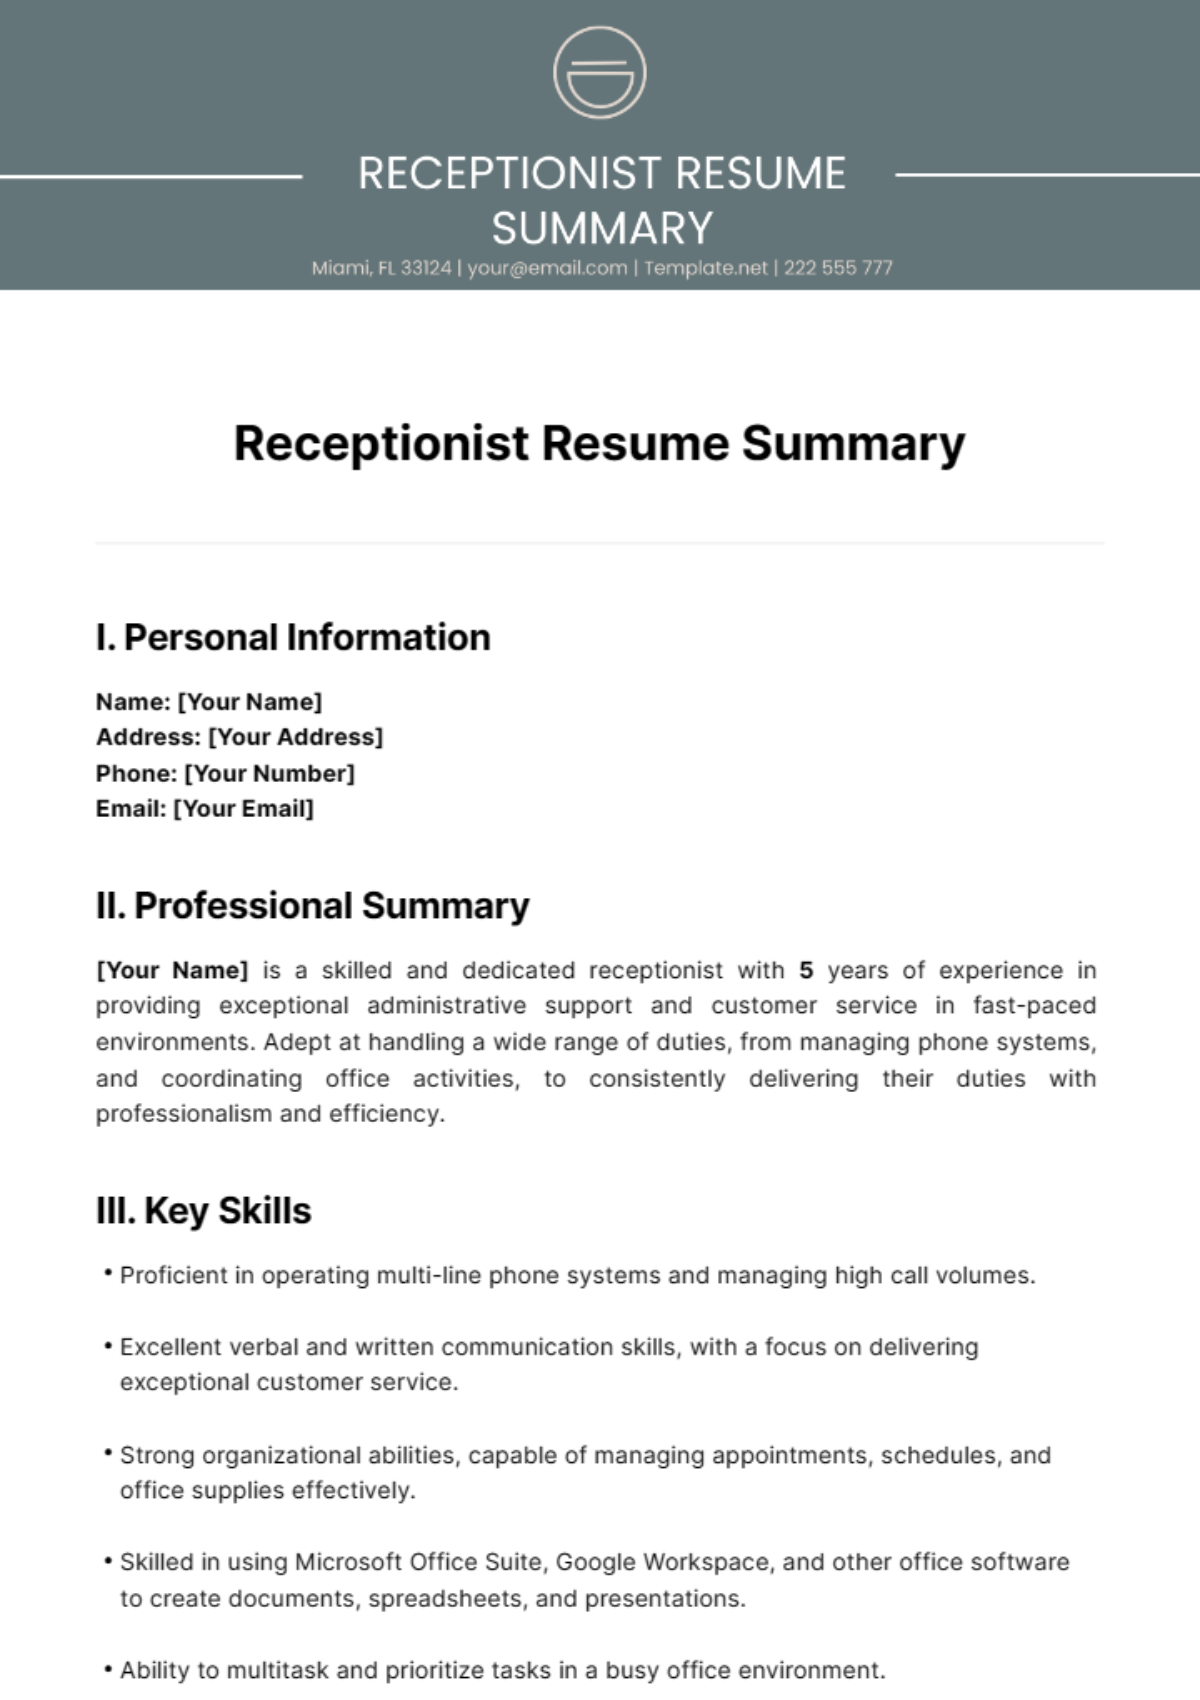 Receptionist Resume Summary Template